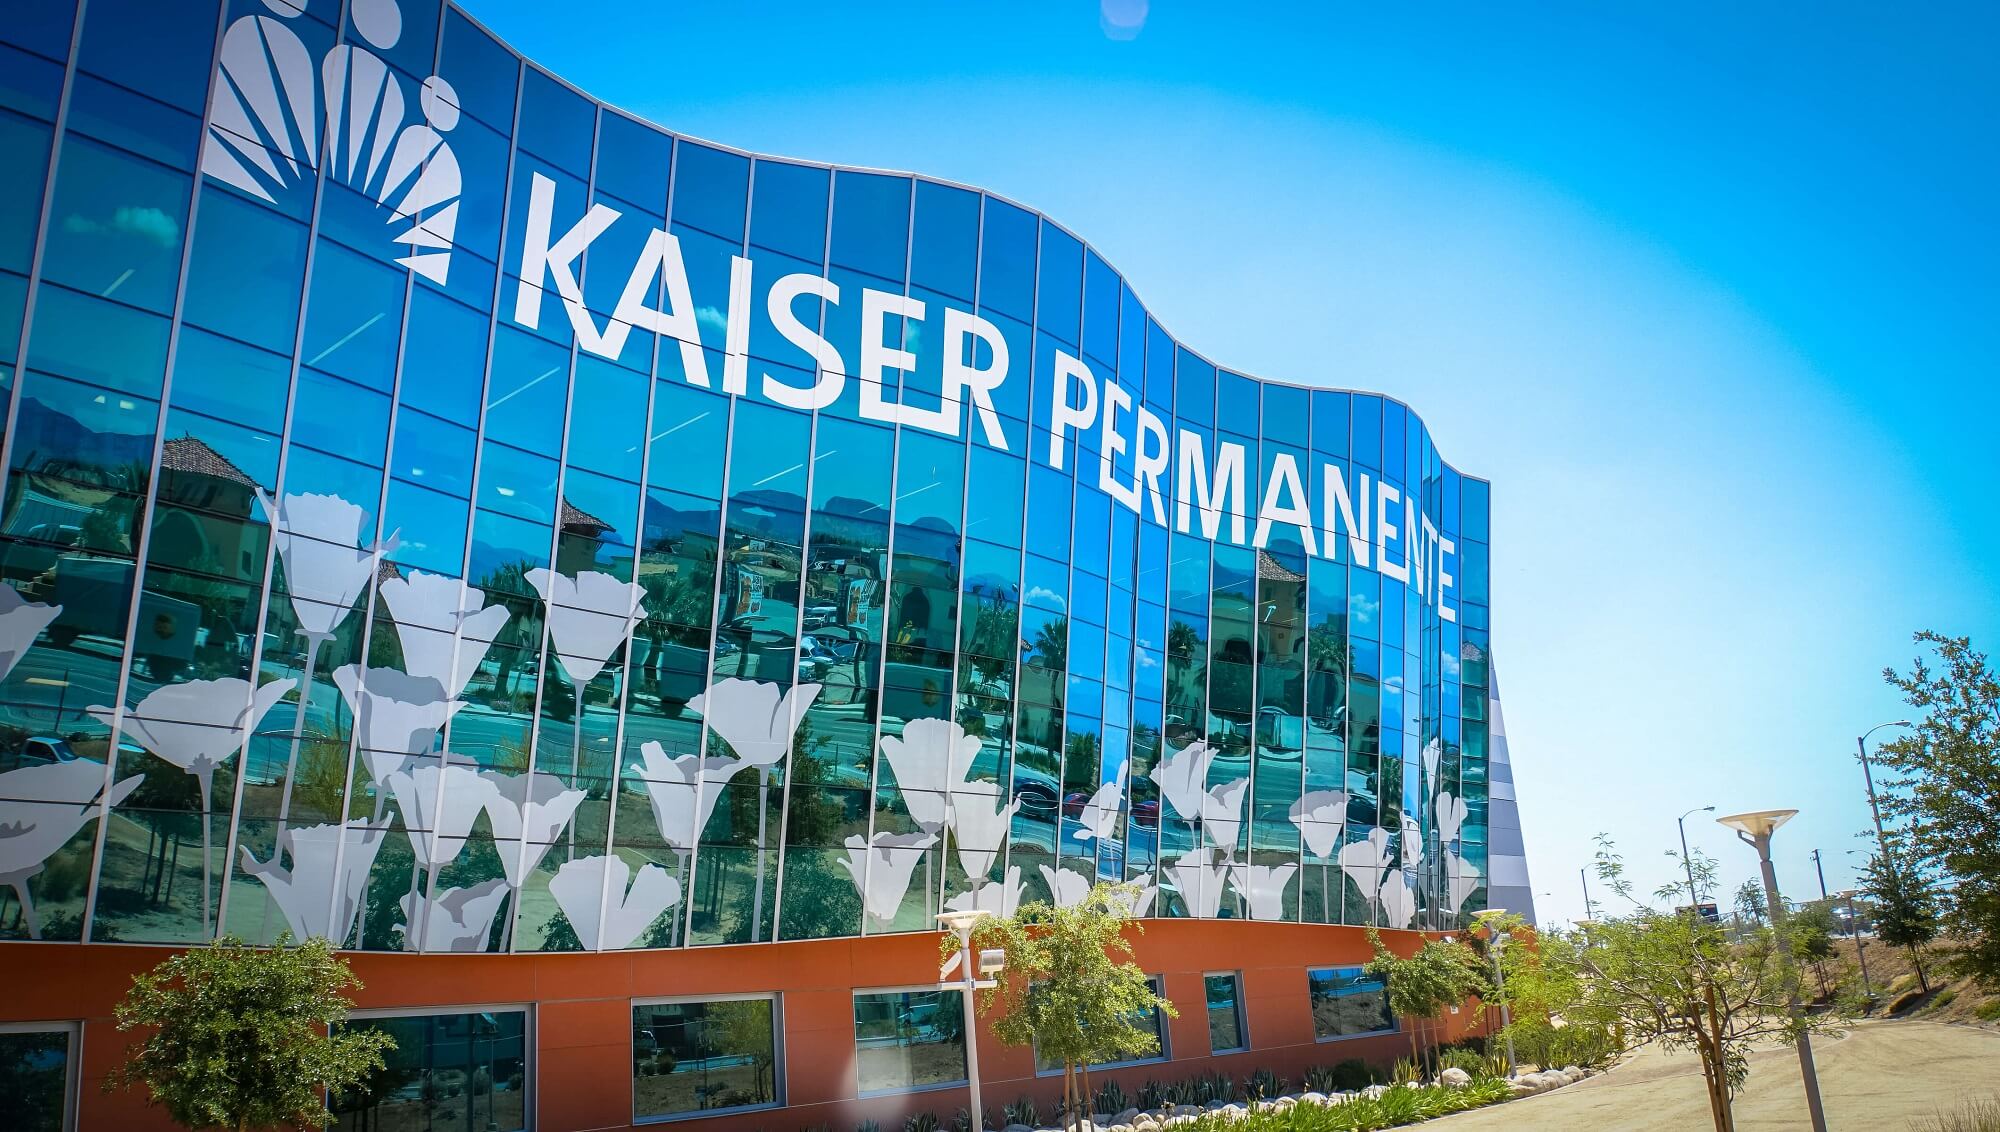 Kaiser permanente preferred providers centene ice center